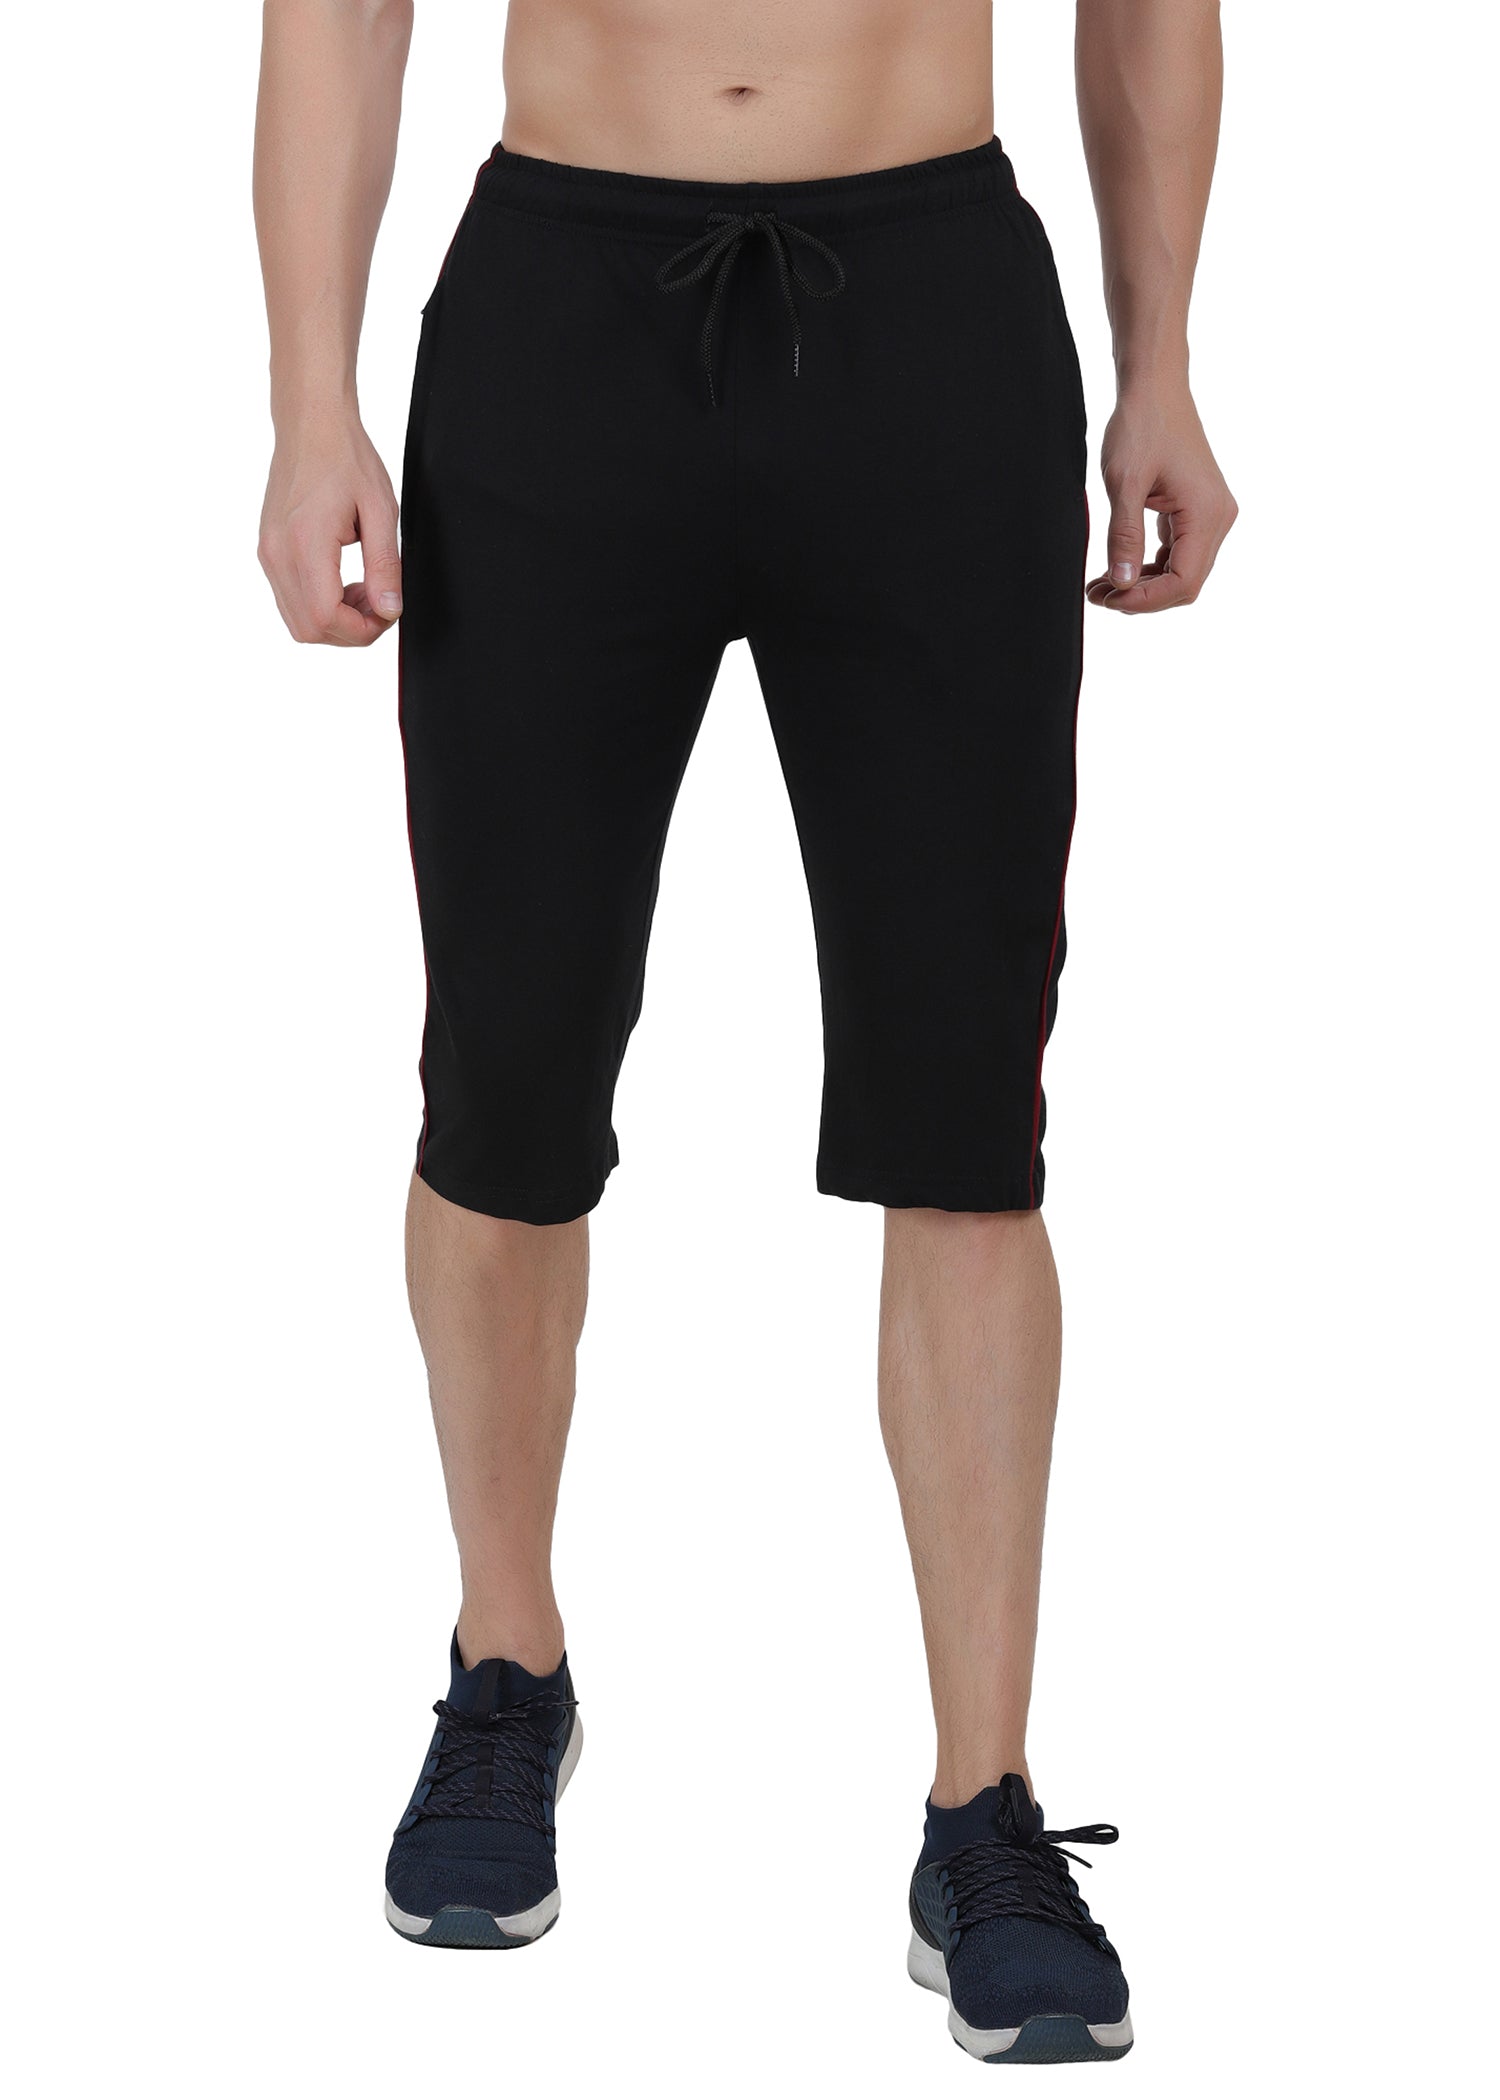 Mens Cargo Capri Shorts With 9 Pockets